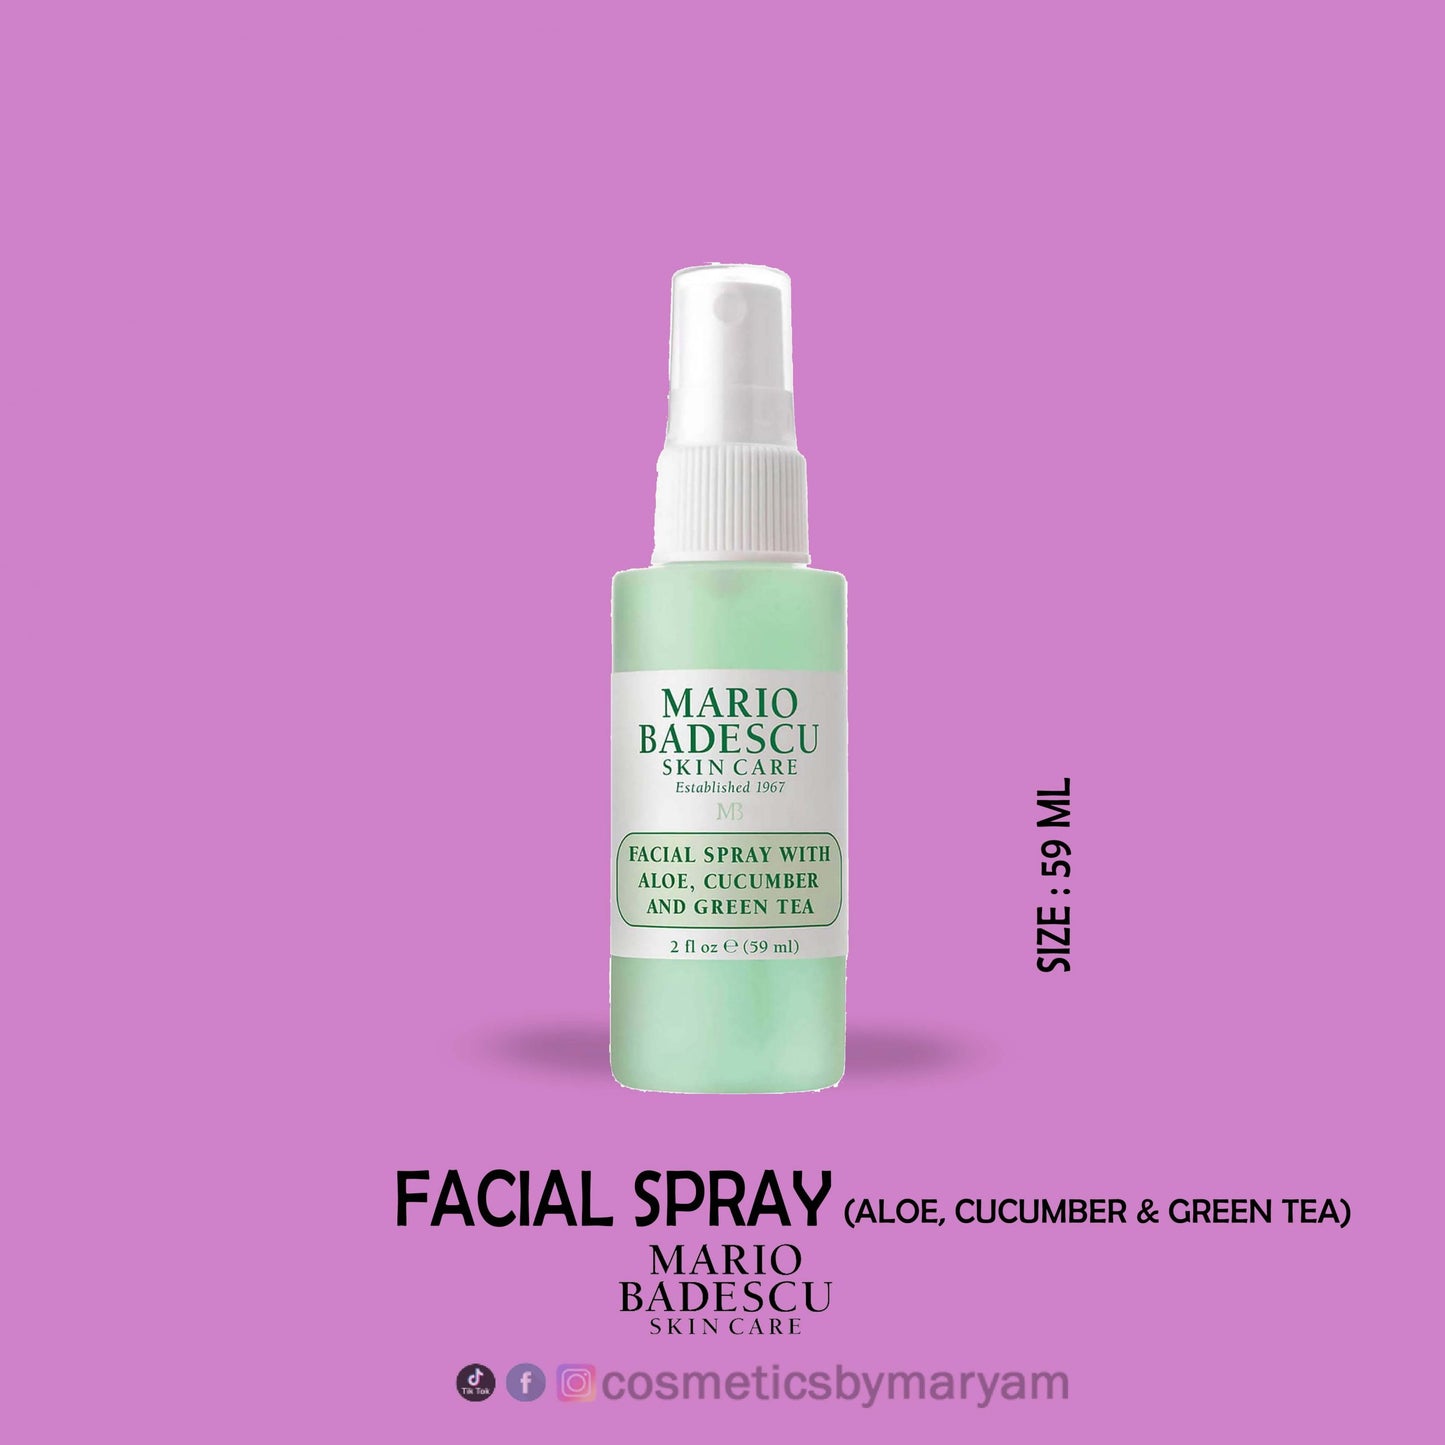 Mario Badescu Facial Spray with Aloe, Cucumber & Green Tea